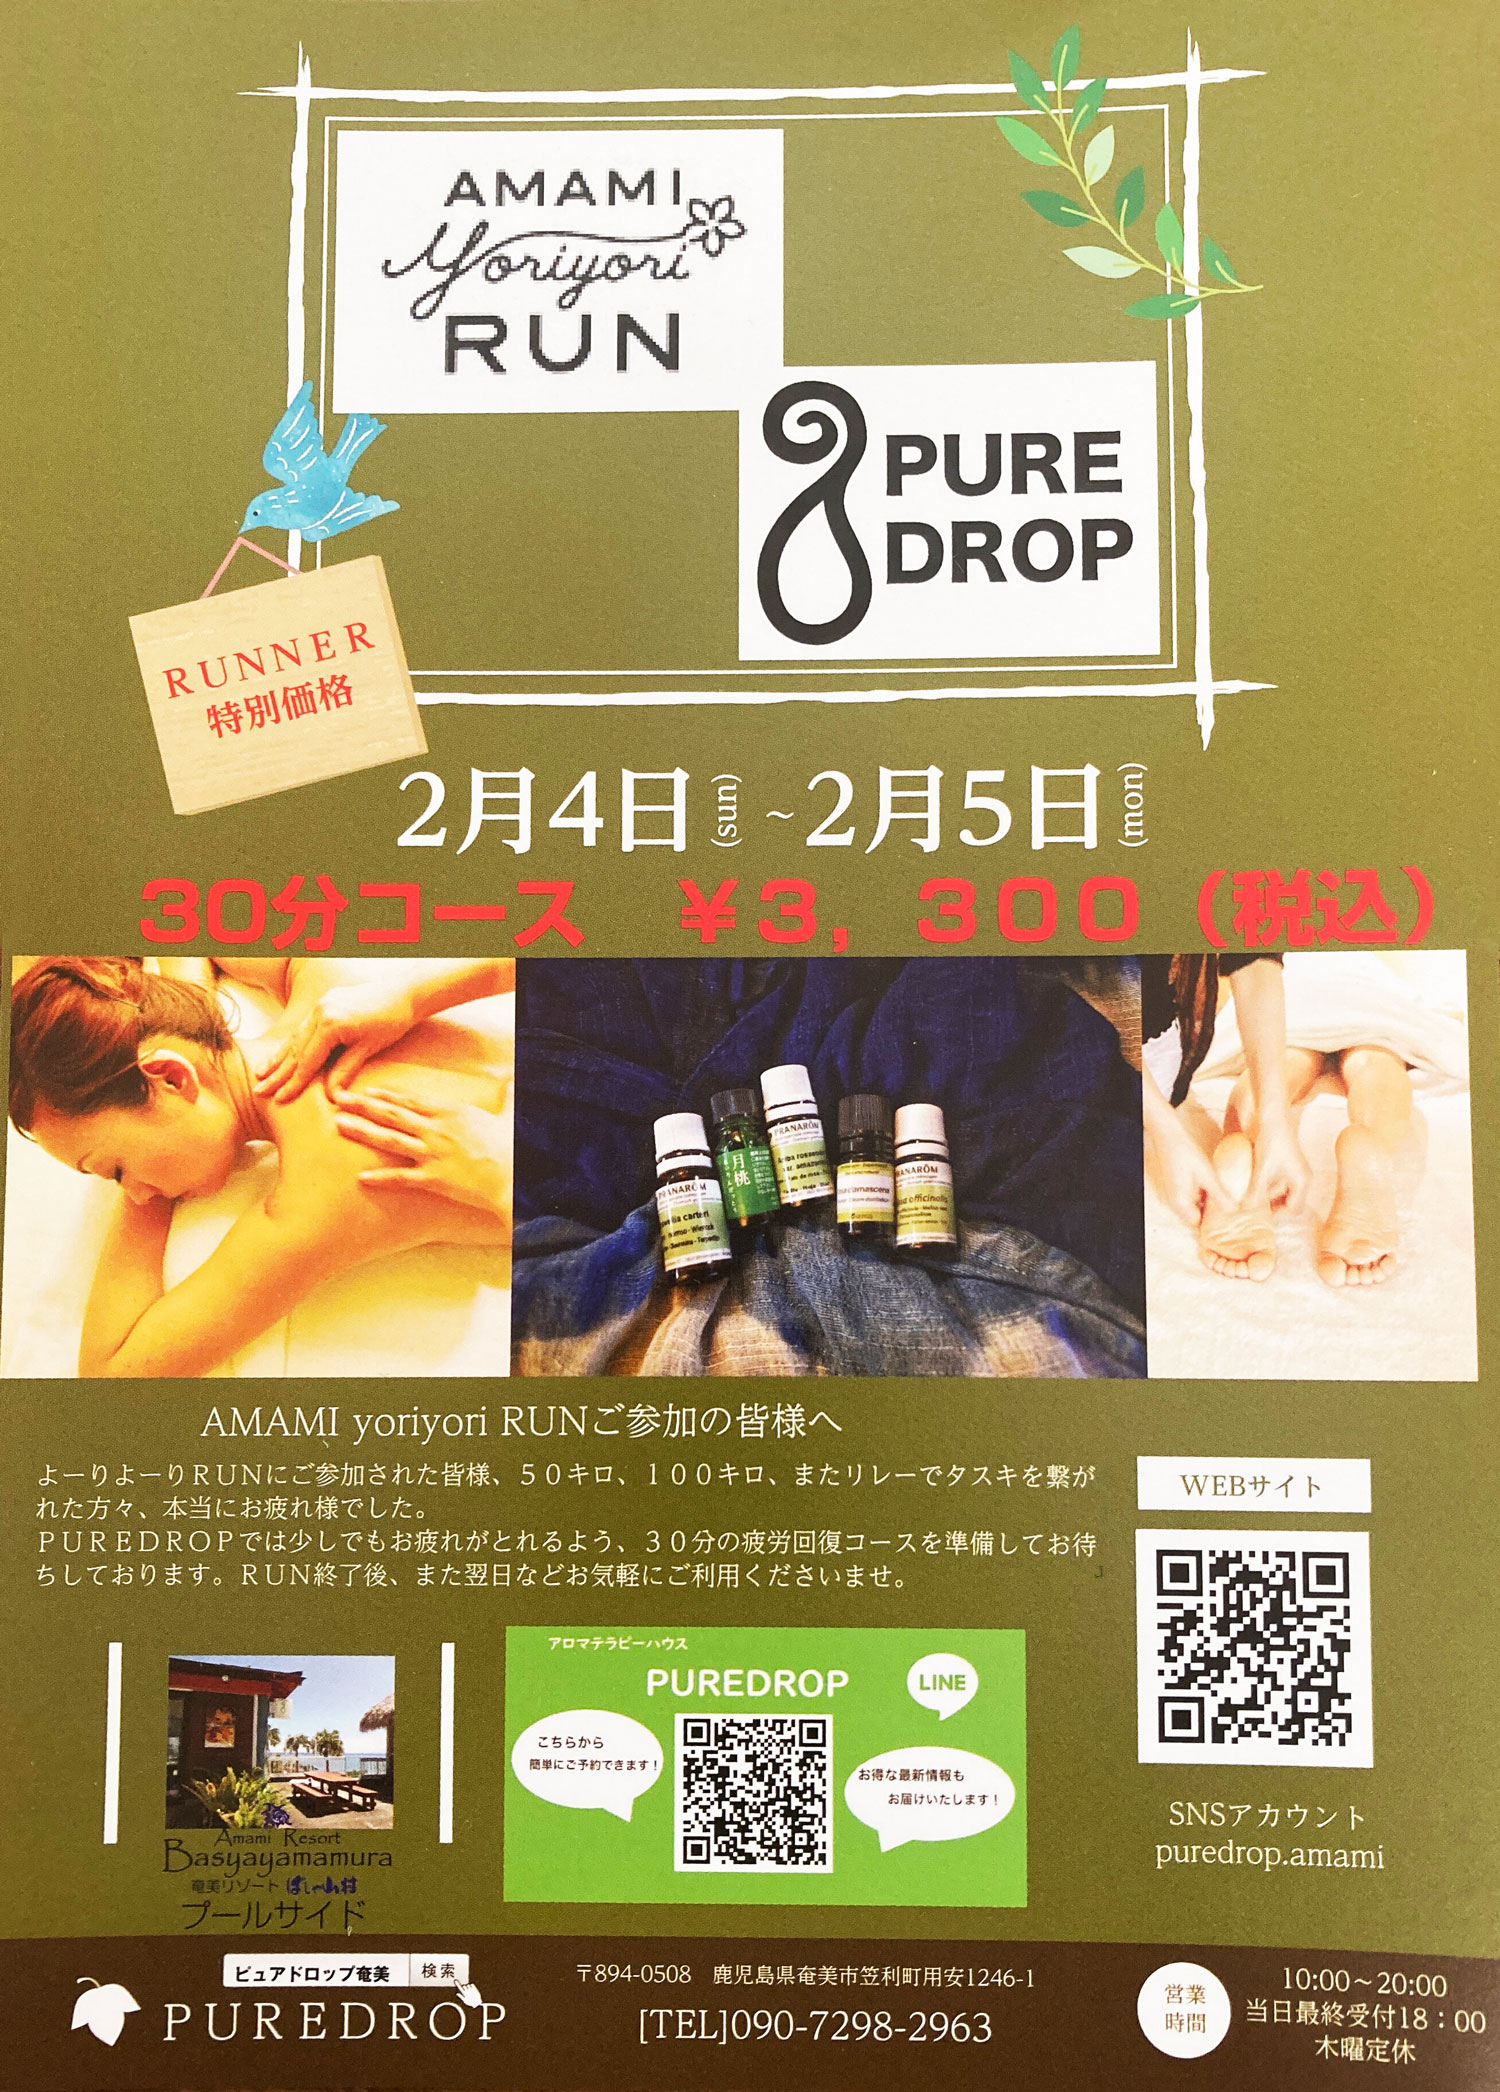 puredrop　大会ランナー特別メニュー